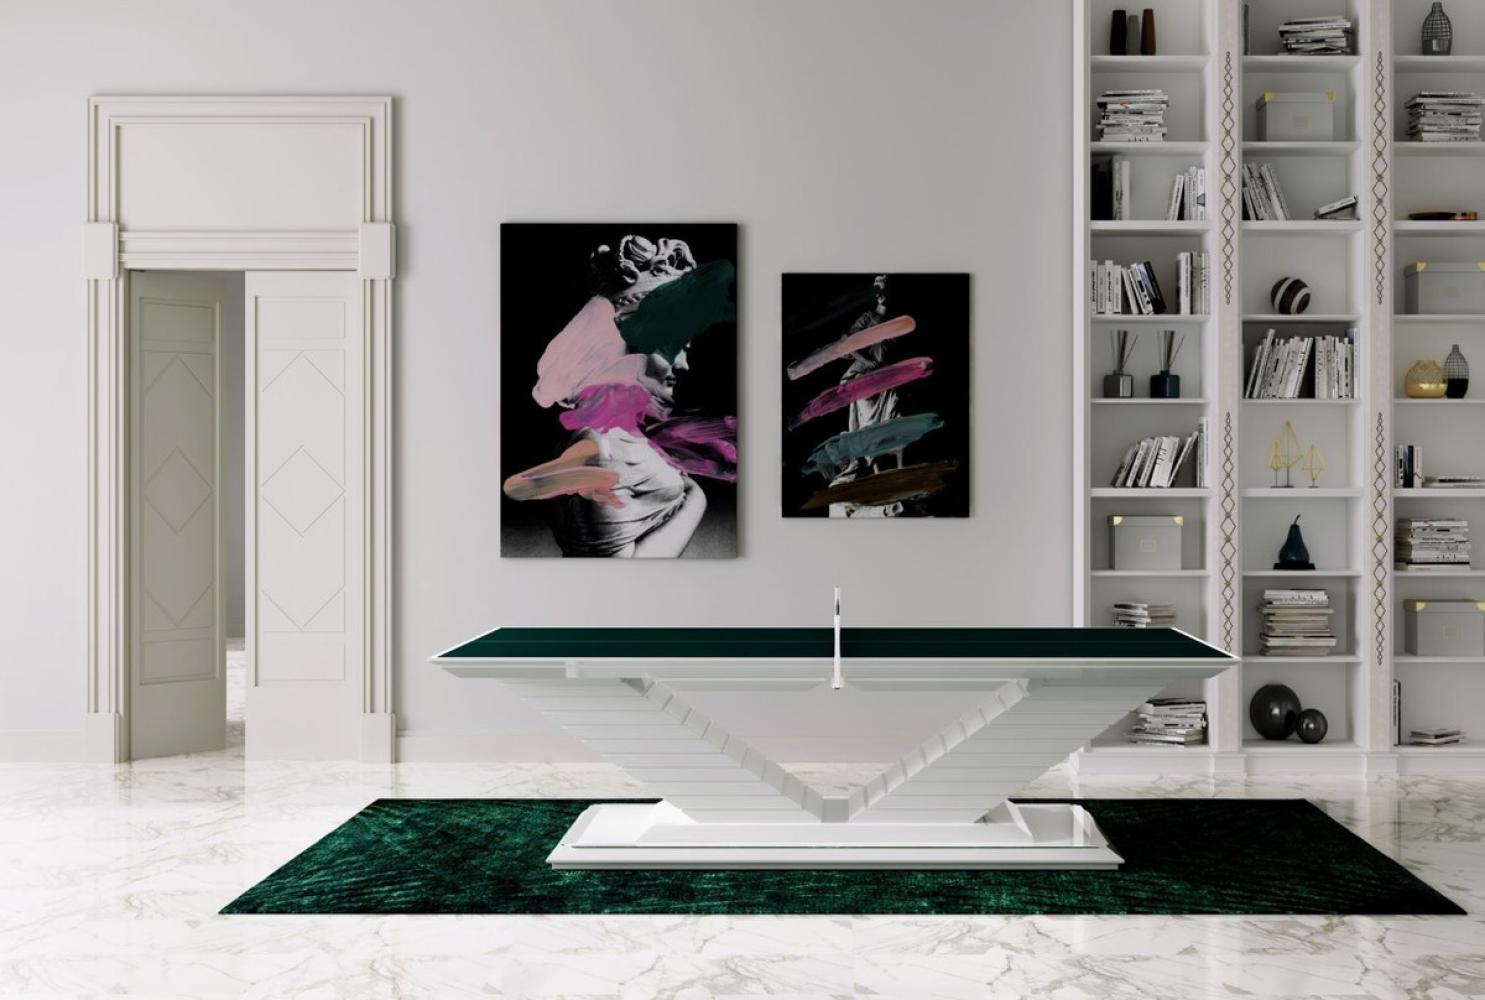 Casa Padrino Luxus Designer Indoor Tischtennisplatte Grün / Hochglanz Weiß 274 x 152,5 x H. 76 cm - Hotel Kollektion - Luxus Qualität Bild 1